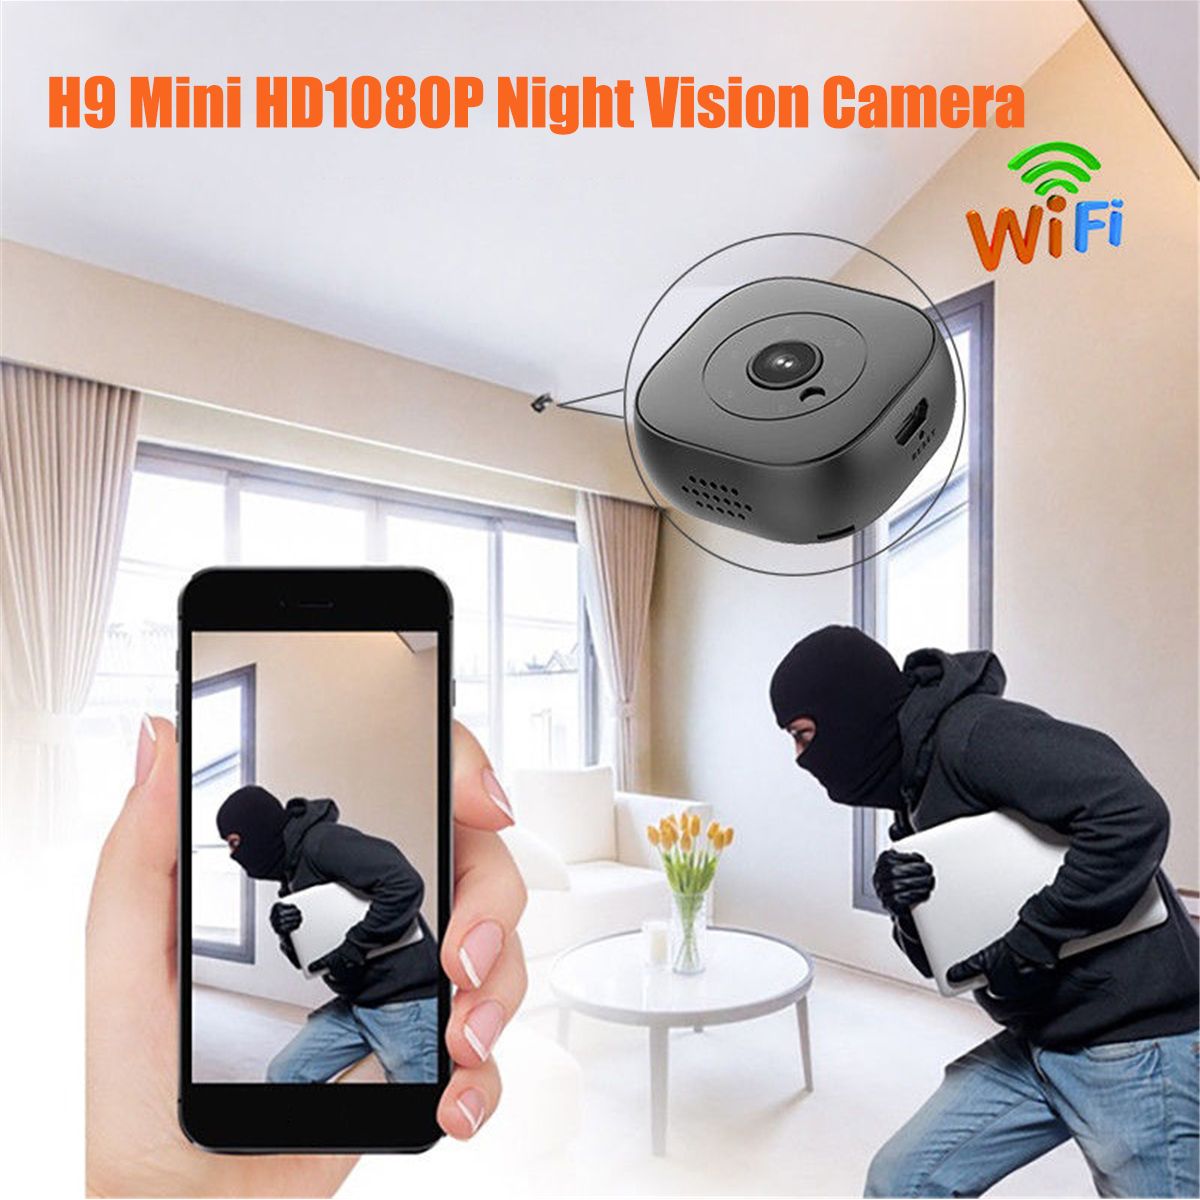 H9-Small-Mini-HD-Night-Vision-Surveillance-Camera-Mobile-Phone-Remote-Intelligent-Camera-WIFI-Car-Ca-1376310